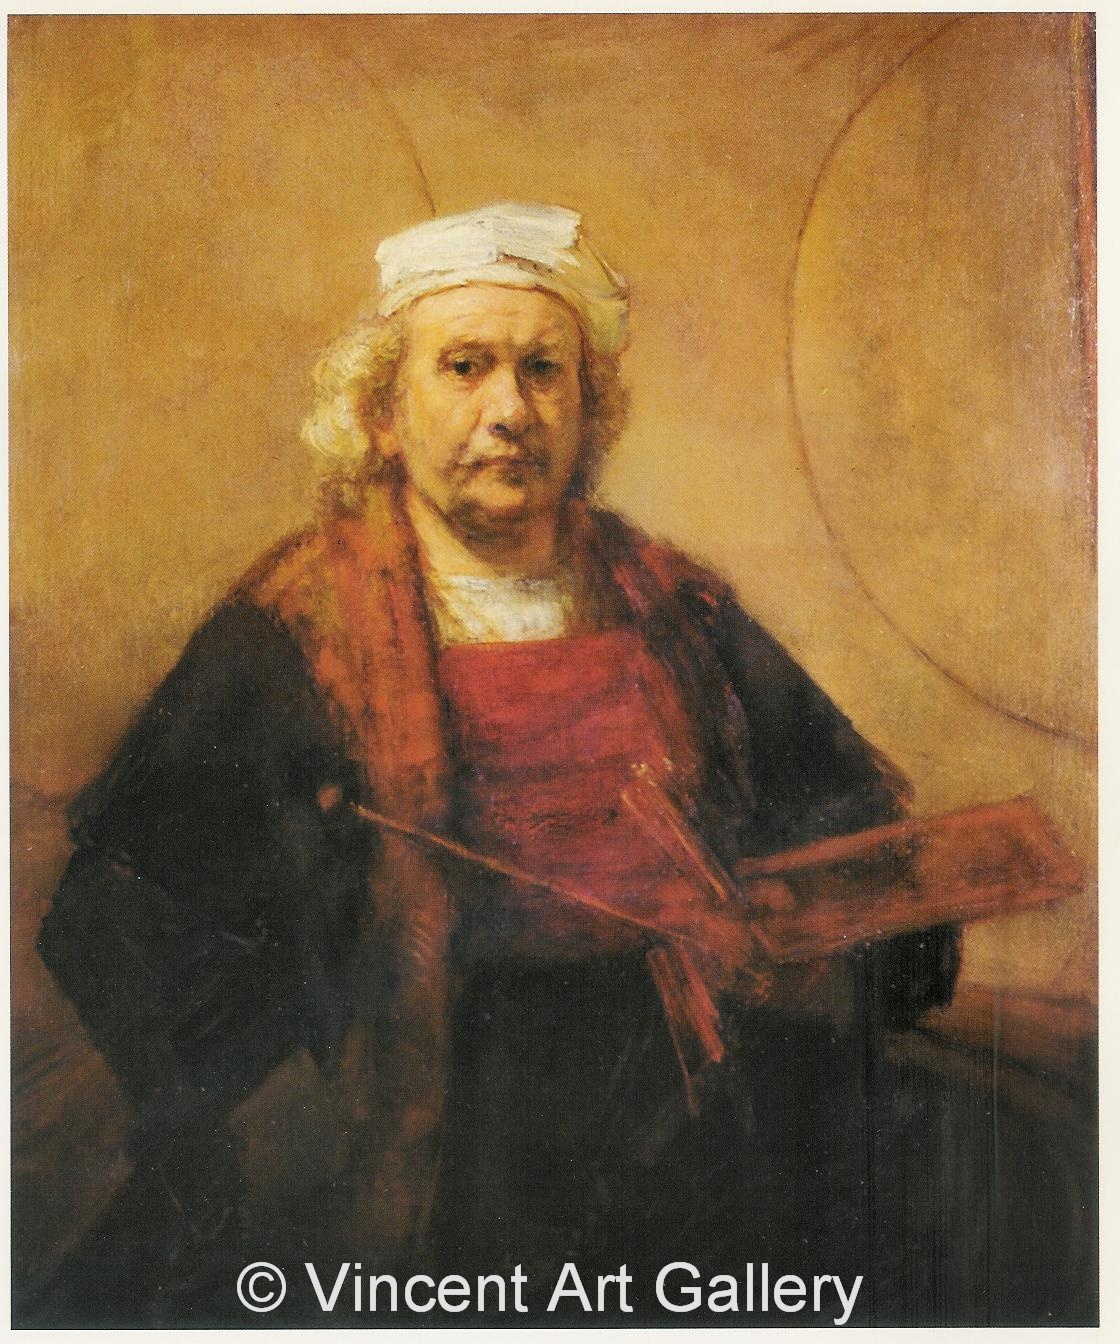 A498, REMBRANDT, Rembrandt van Rijn, Selfportrait